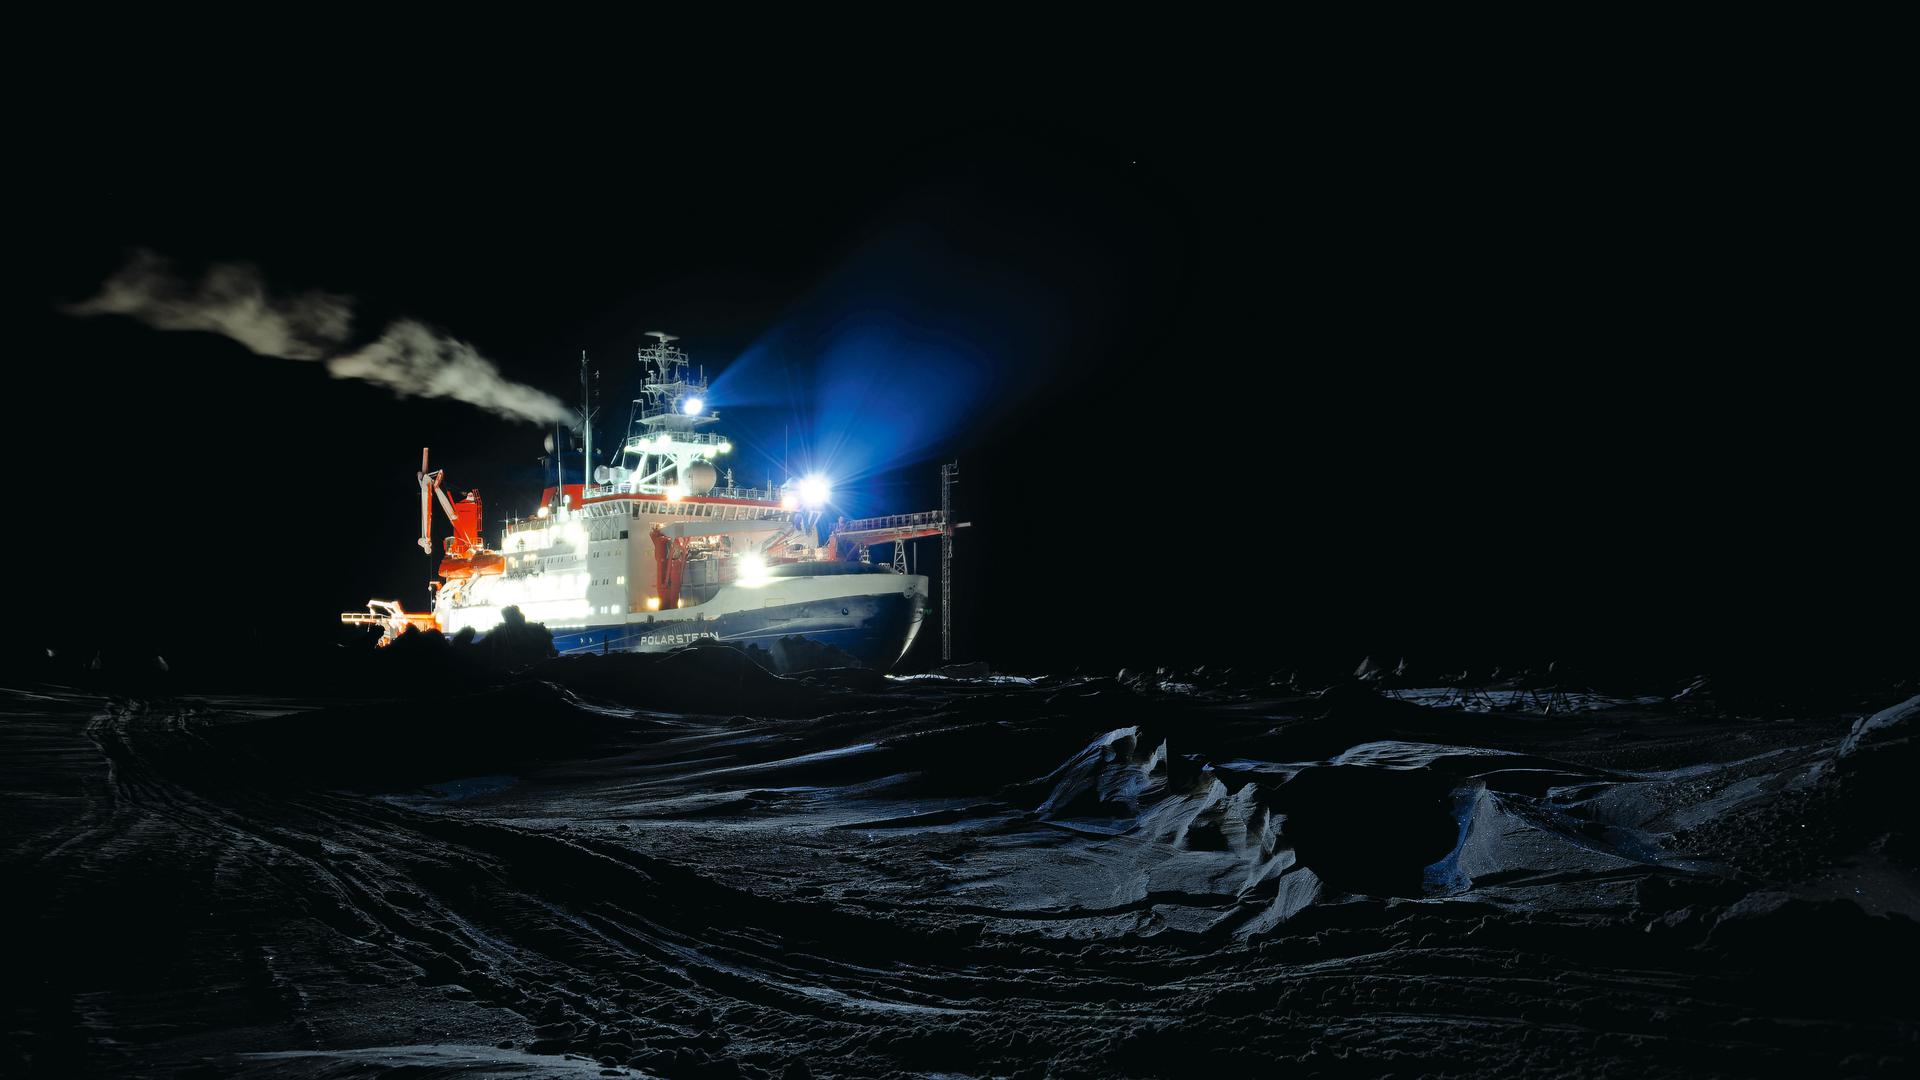 Tausende Kilometer Dunkelheit um einen einsamen Forschungsposten: Die „Polarstern“, aufgenommen während der langen Polarnacht. Das im Eis eingefrorene Schiff driftete ein Jahr lang in der Arktis, während Wissenschaftler verschiedener Nationen Daten über die Auswirkungen des Klimawandels auf die Natur im Norden gesammelt haben.